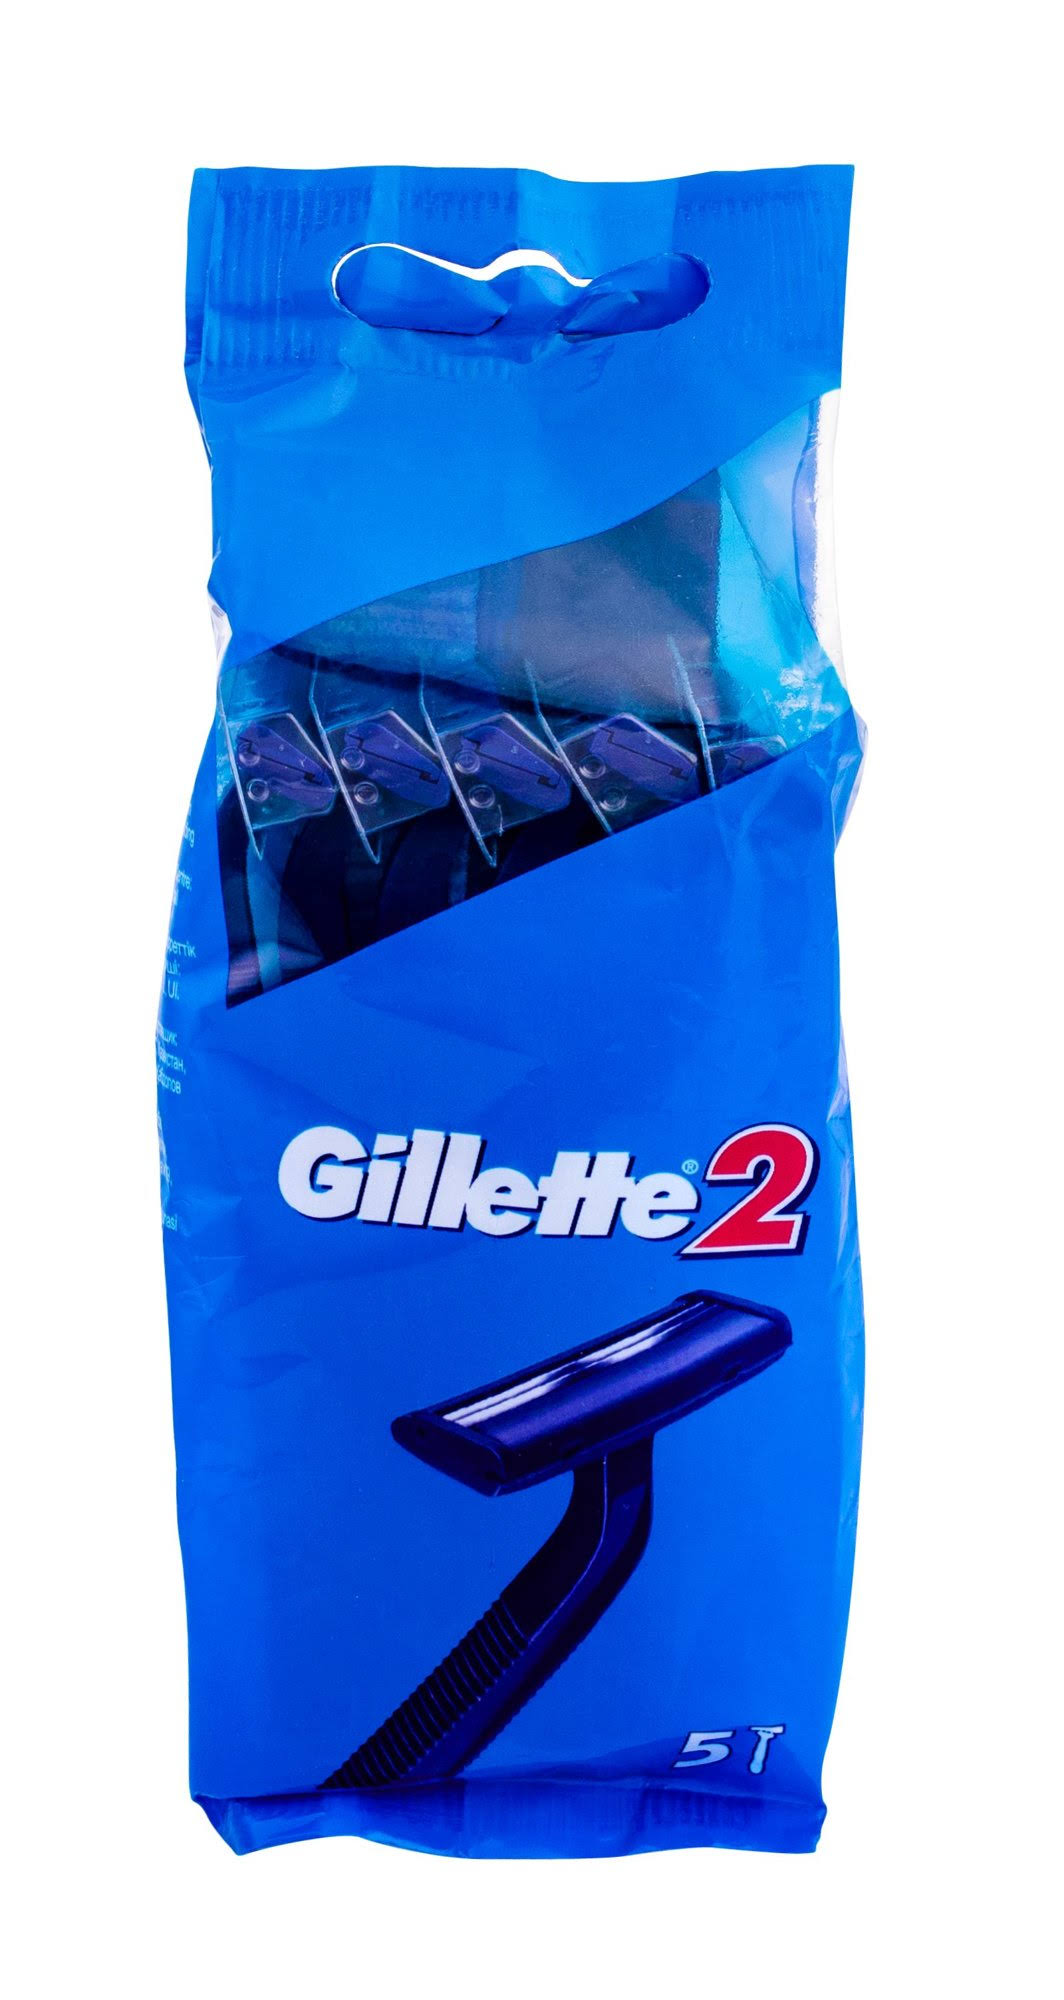 Gillette 2 Men's Disposable Razors - 5 Pack